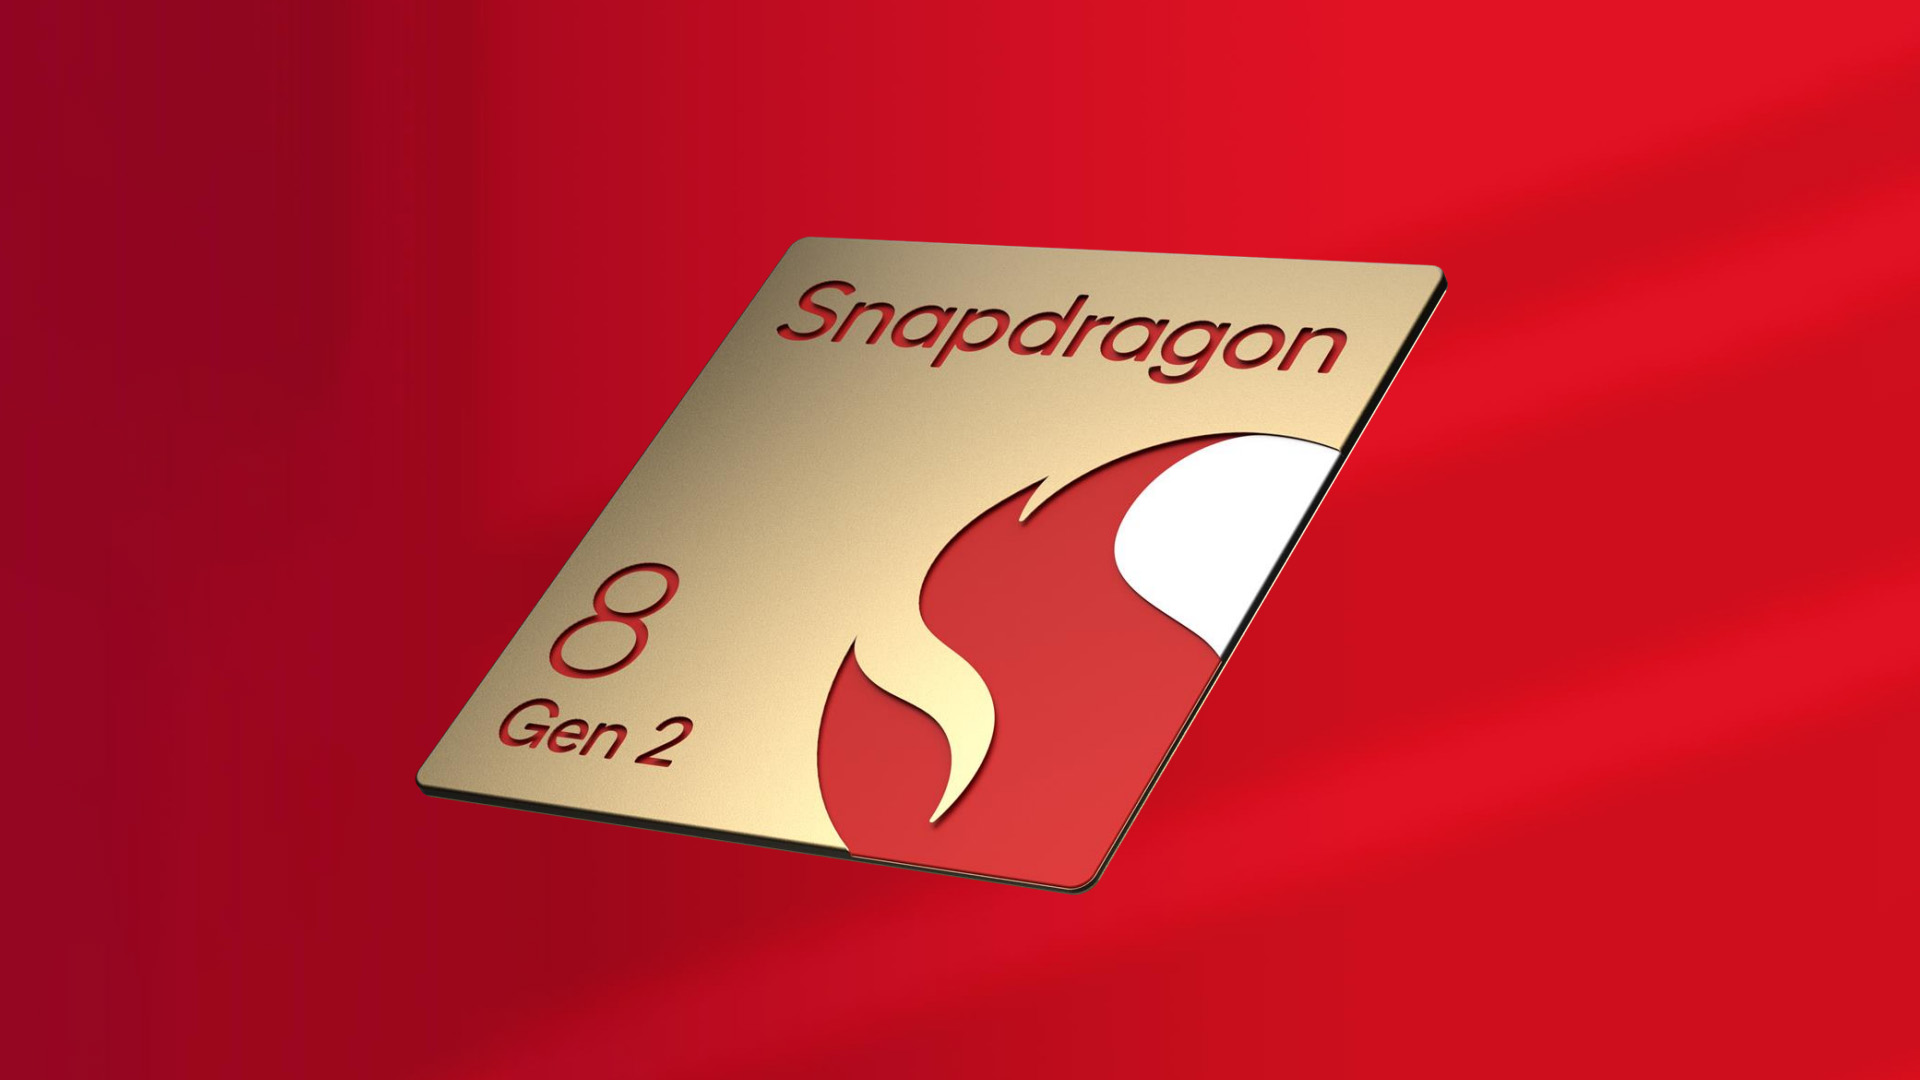 Snapdragon 8 Gen 2 chip red backdrop